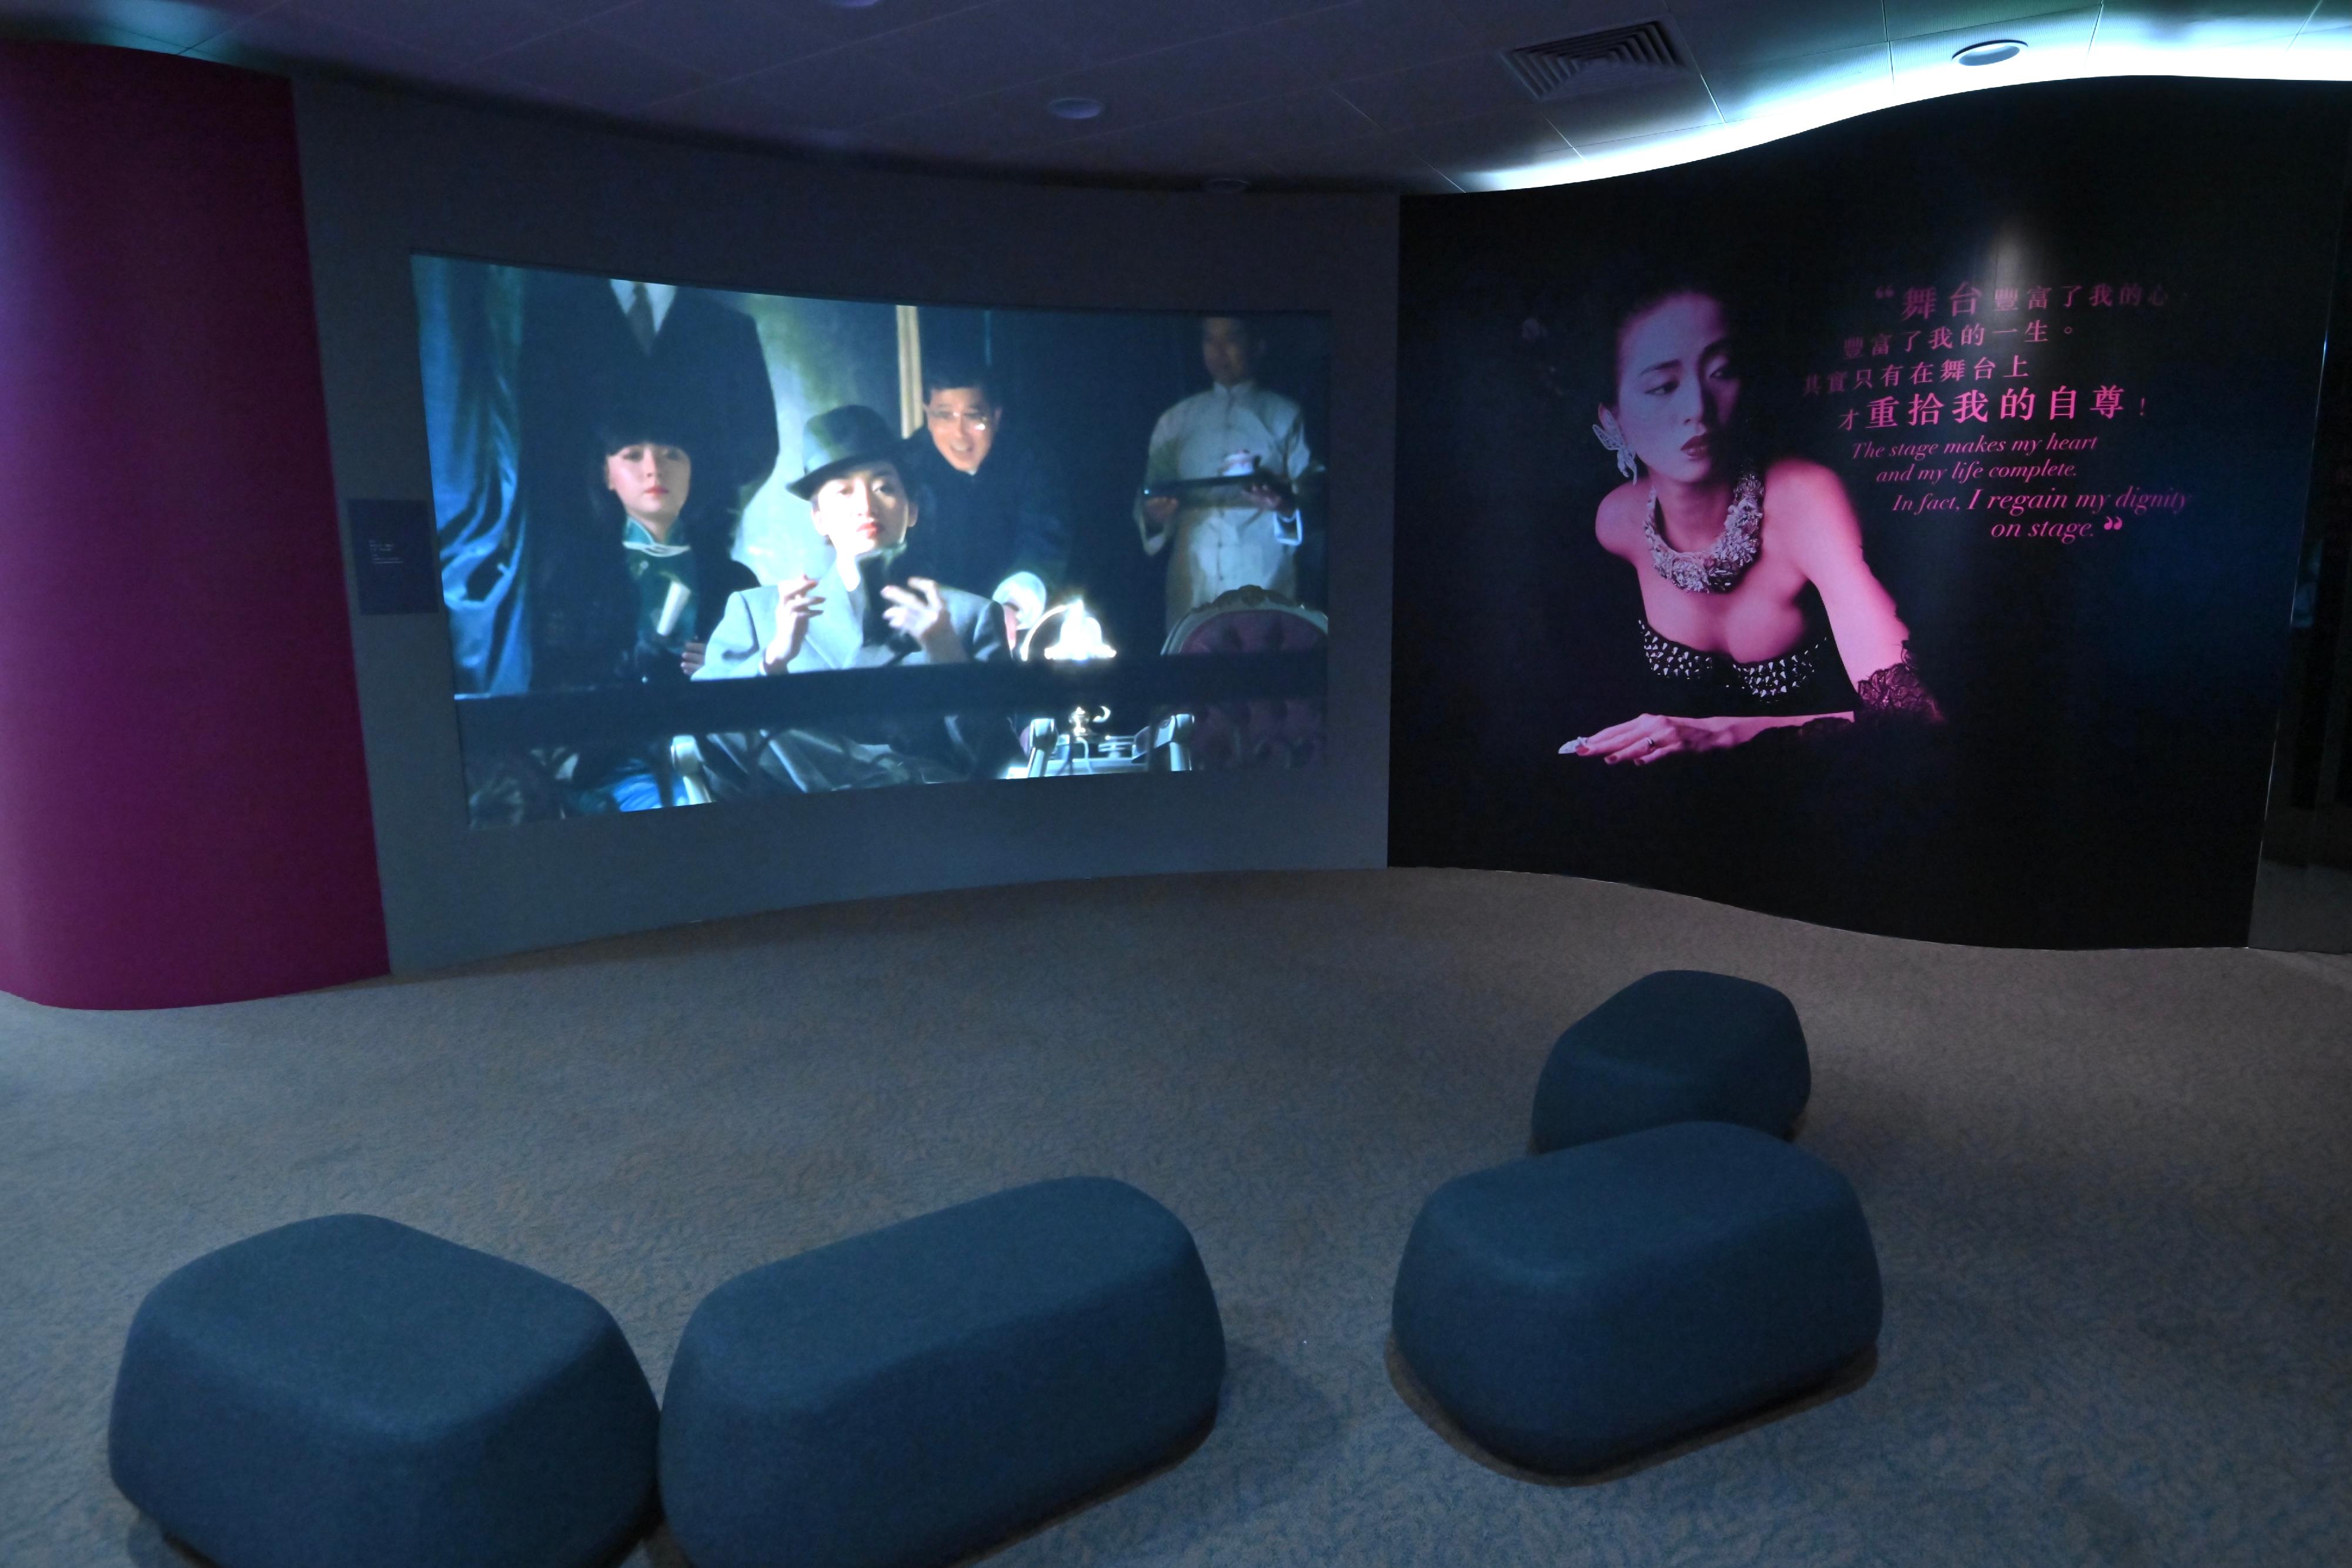 「絕代芳華・梅艷芳」展覽開幕典禮今日（十二月二十三日）在香港文化博物館舉行。展覽影片展示梅艷芳在音樂和電影中不同形象及獲獎感受。